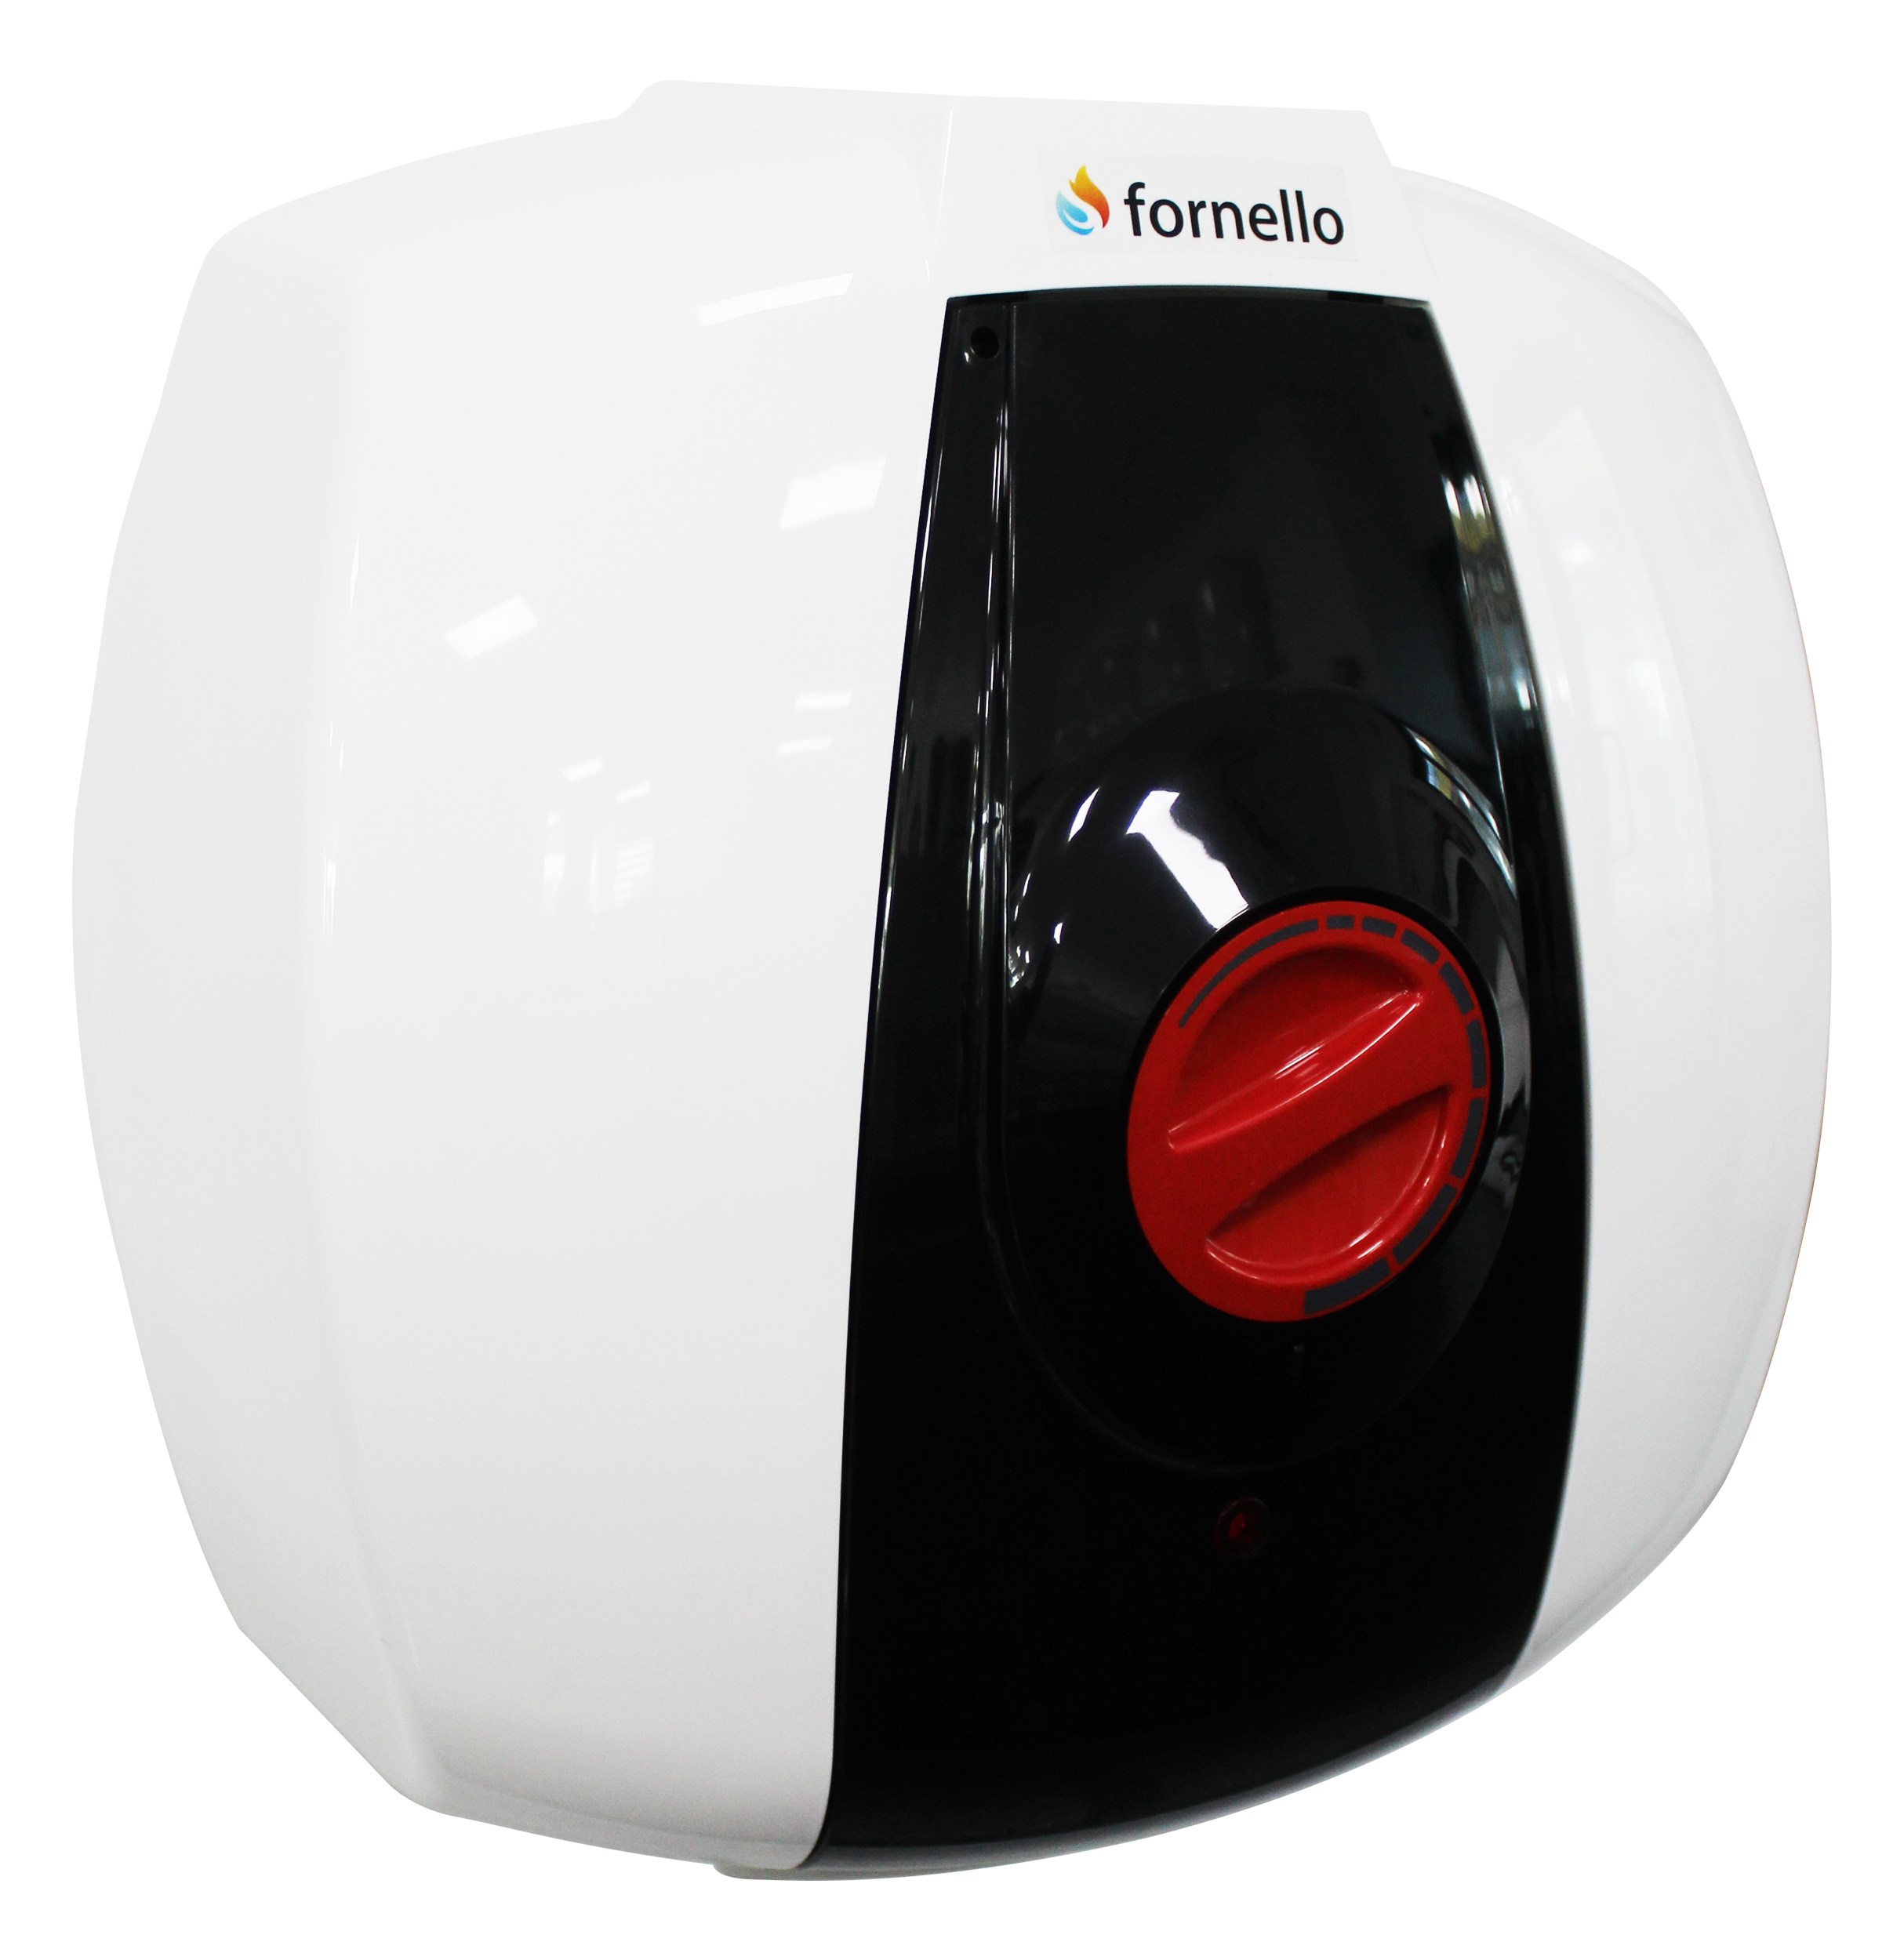 Boiler electric Fornello Optima GCA 1015 M54 RC, 1500 W, 10 l, 0.9 Mpa, Termostat reglabil, Montare deasupra chiuvetei, Alb 0.9